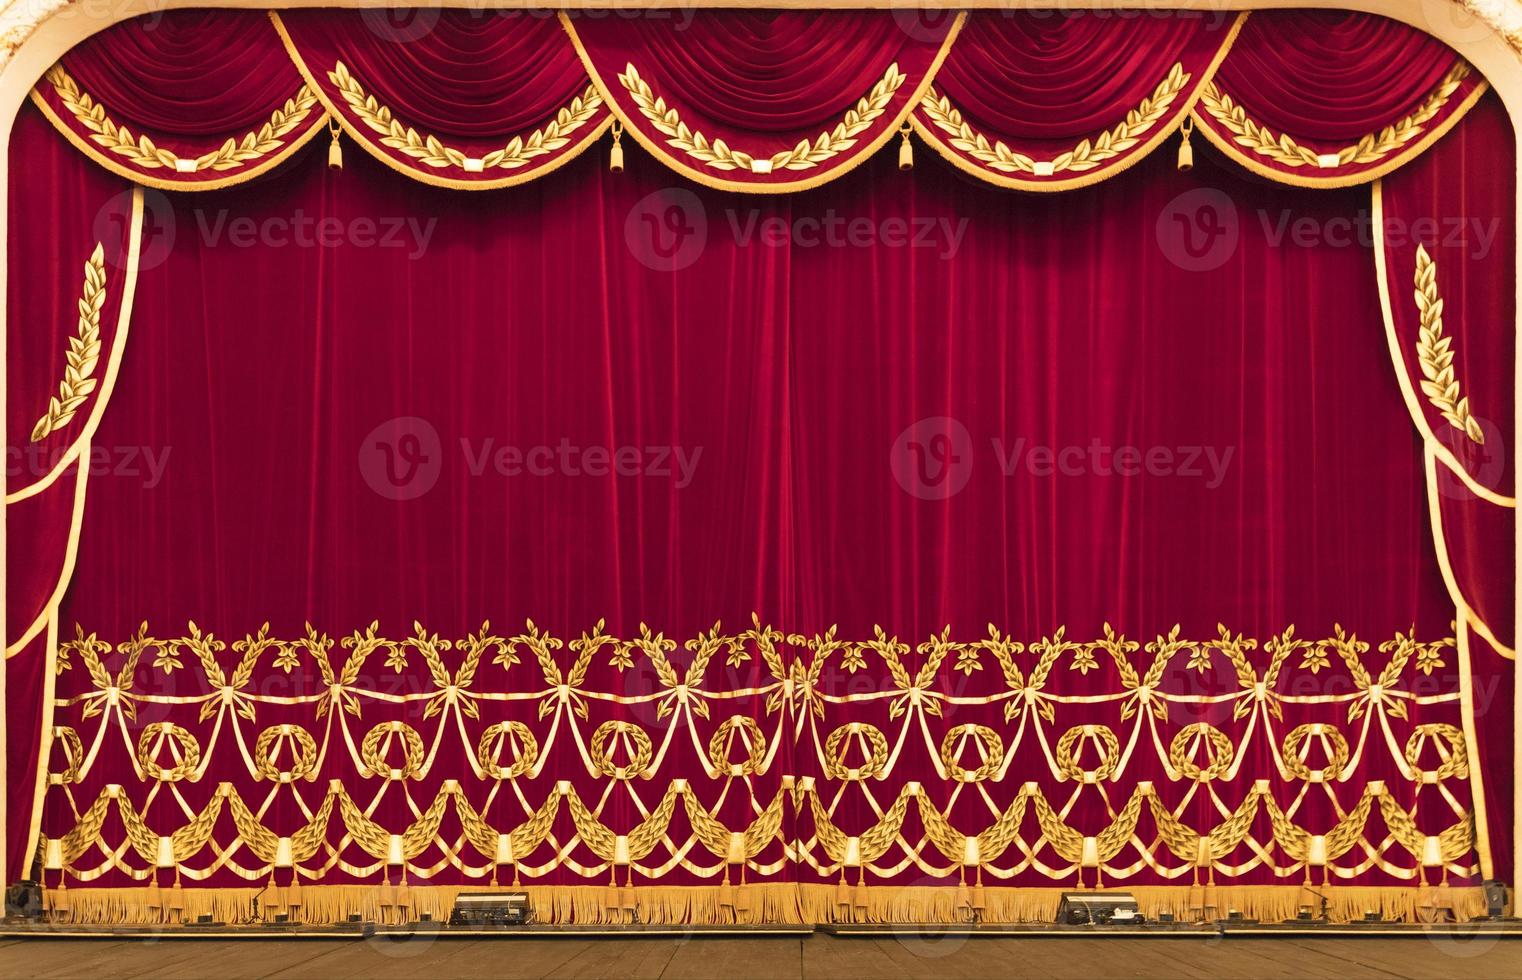 le rideau du théâtre est rouge. présentation. cinéma. photo